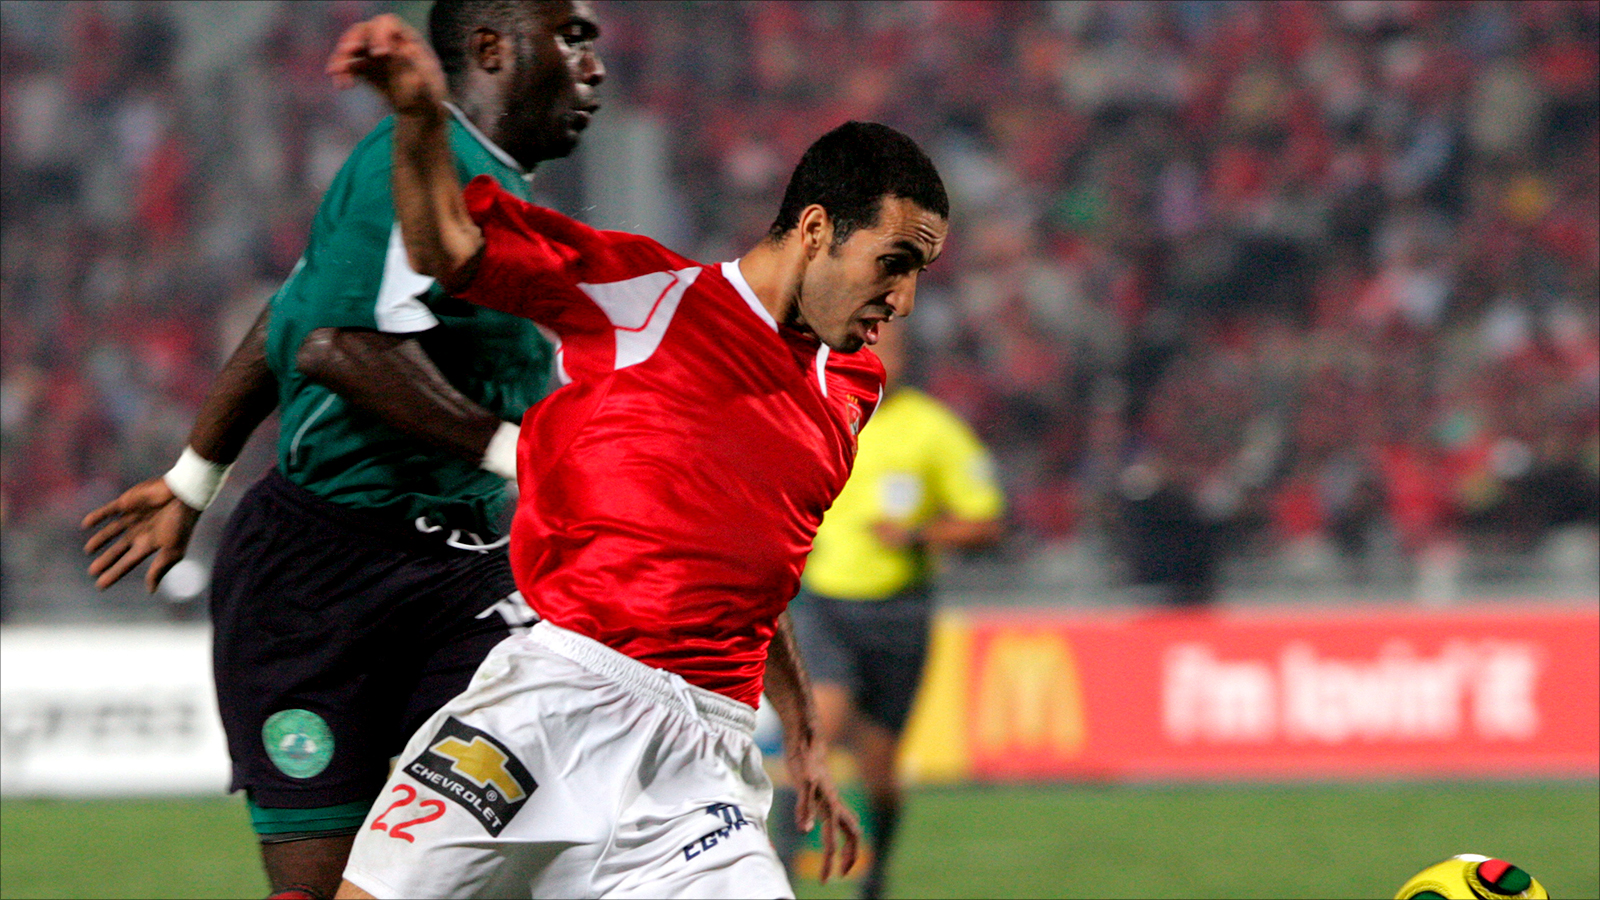 ‪أبو تريكة قاد منتخب مصر للفوز بكأس أمم أفريقيا عام 2008 بالقاهرة‬ (الأوروبية)